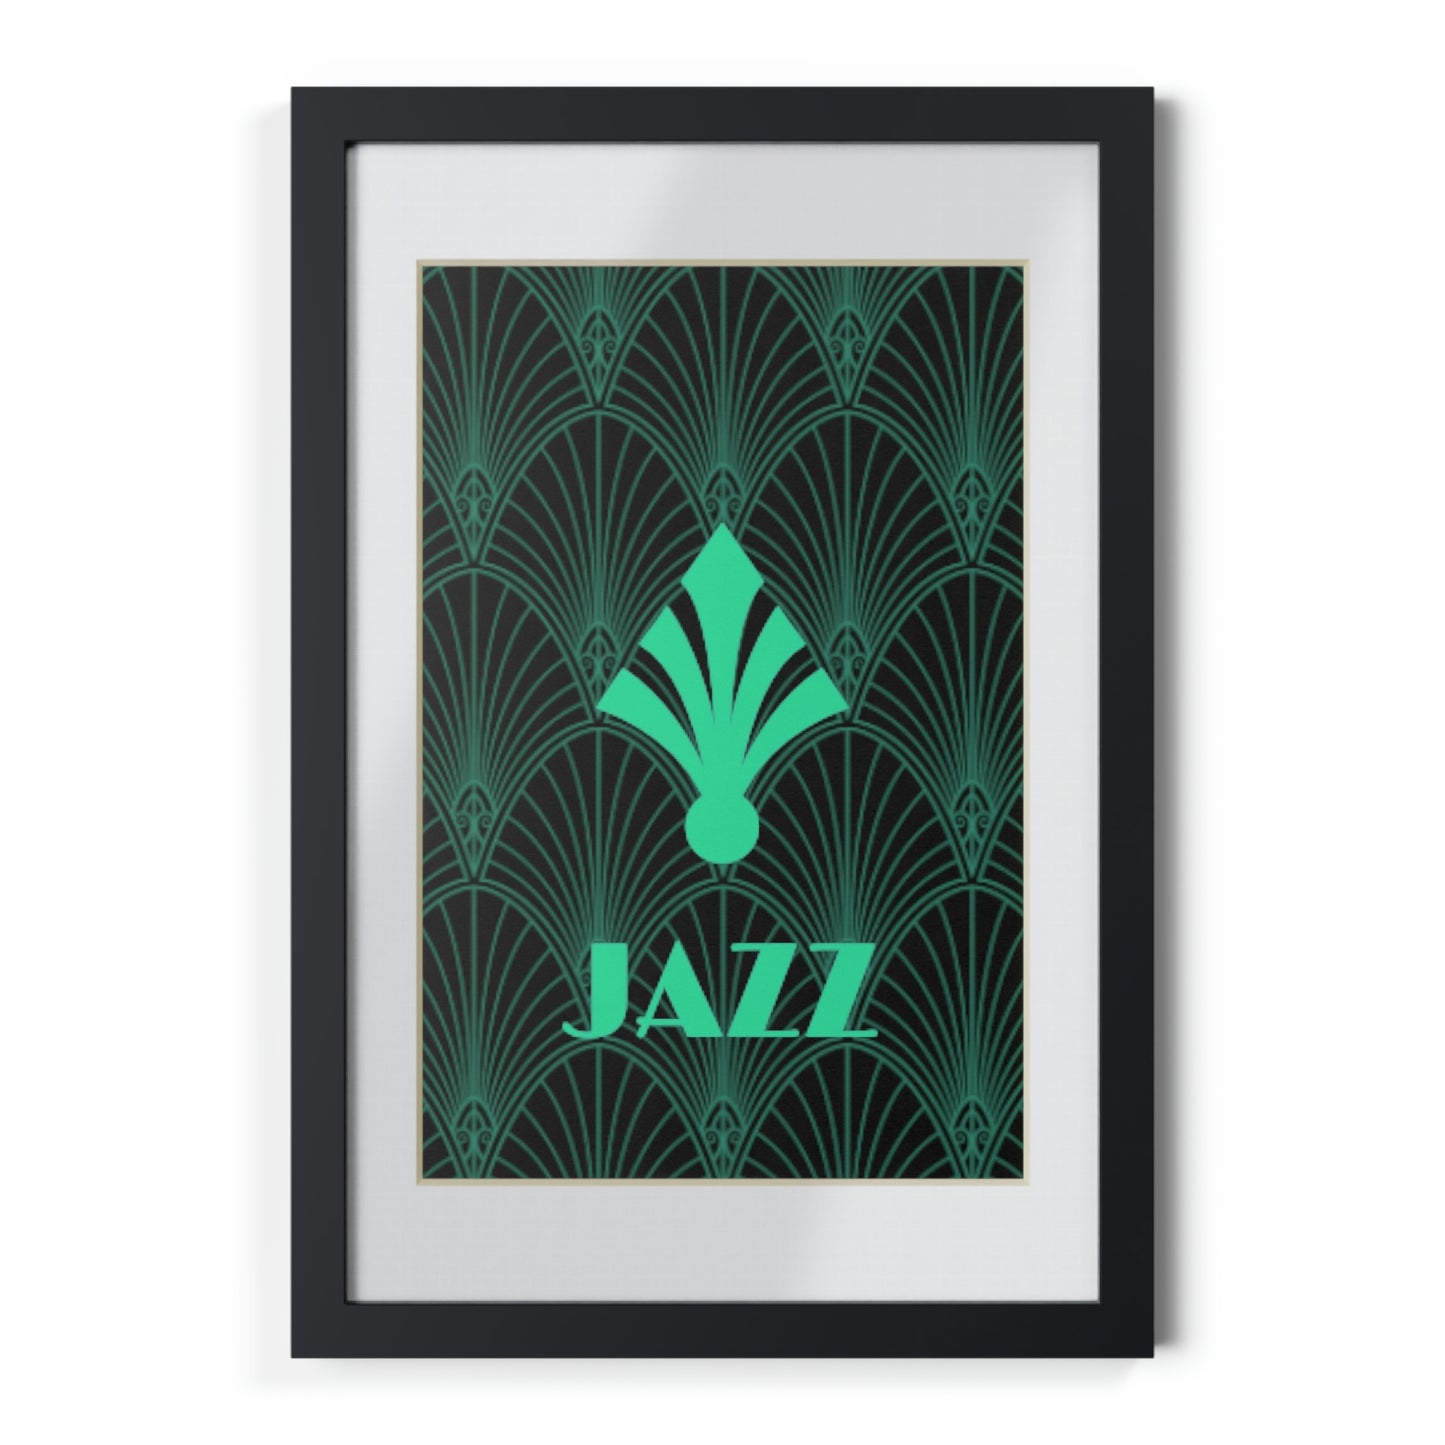 JAZZ - Framed Posters, Black